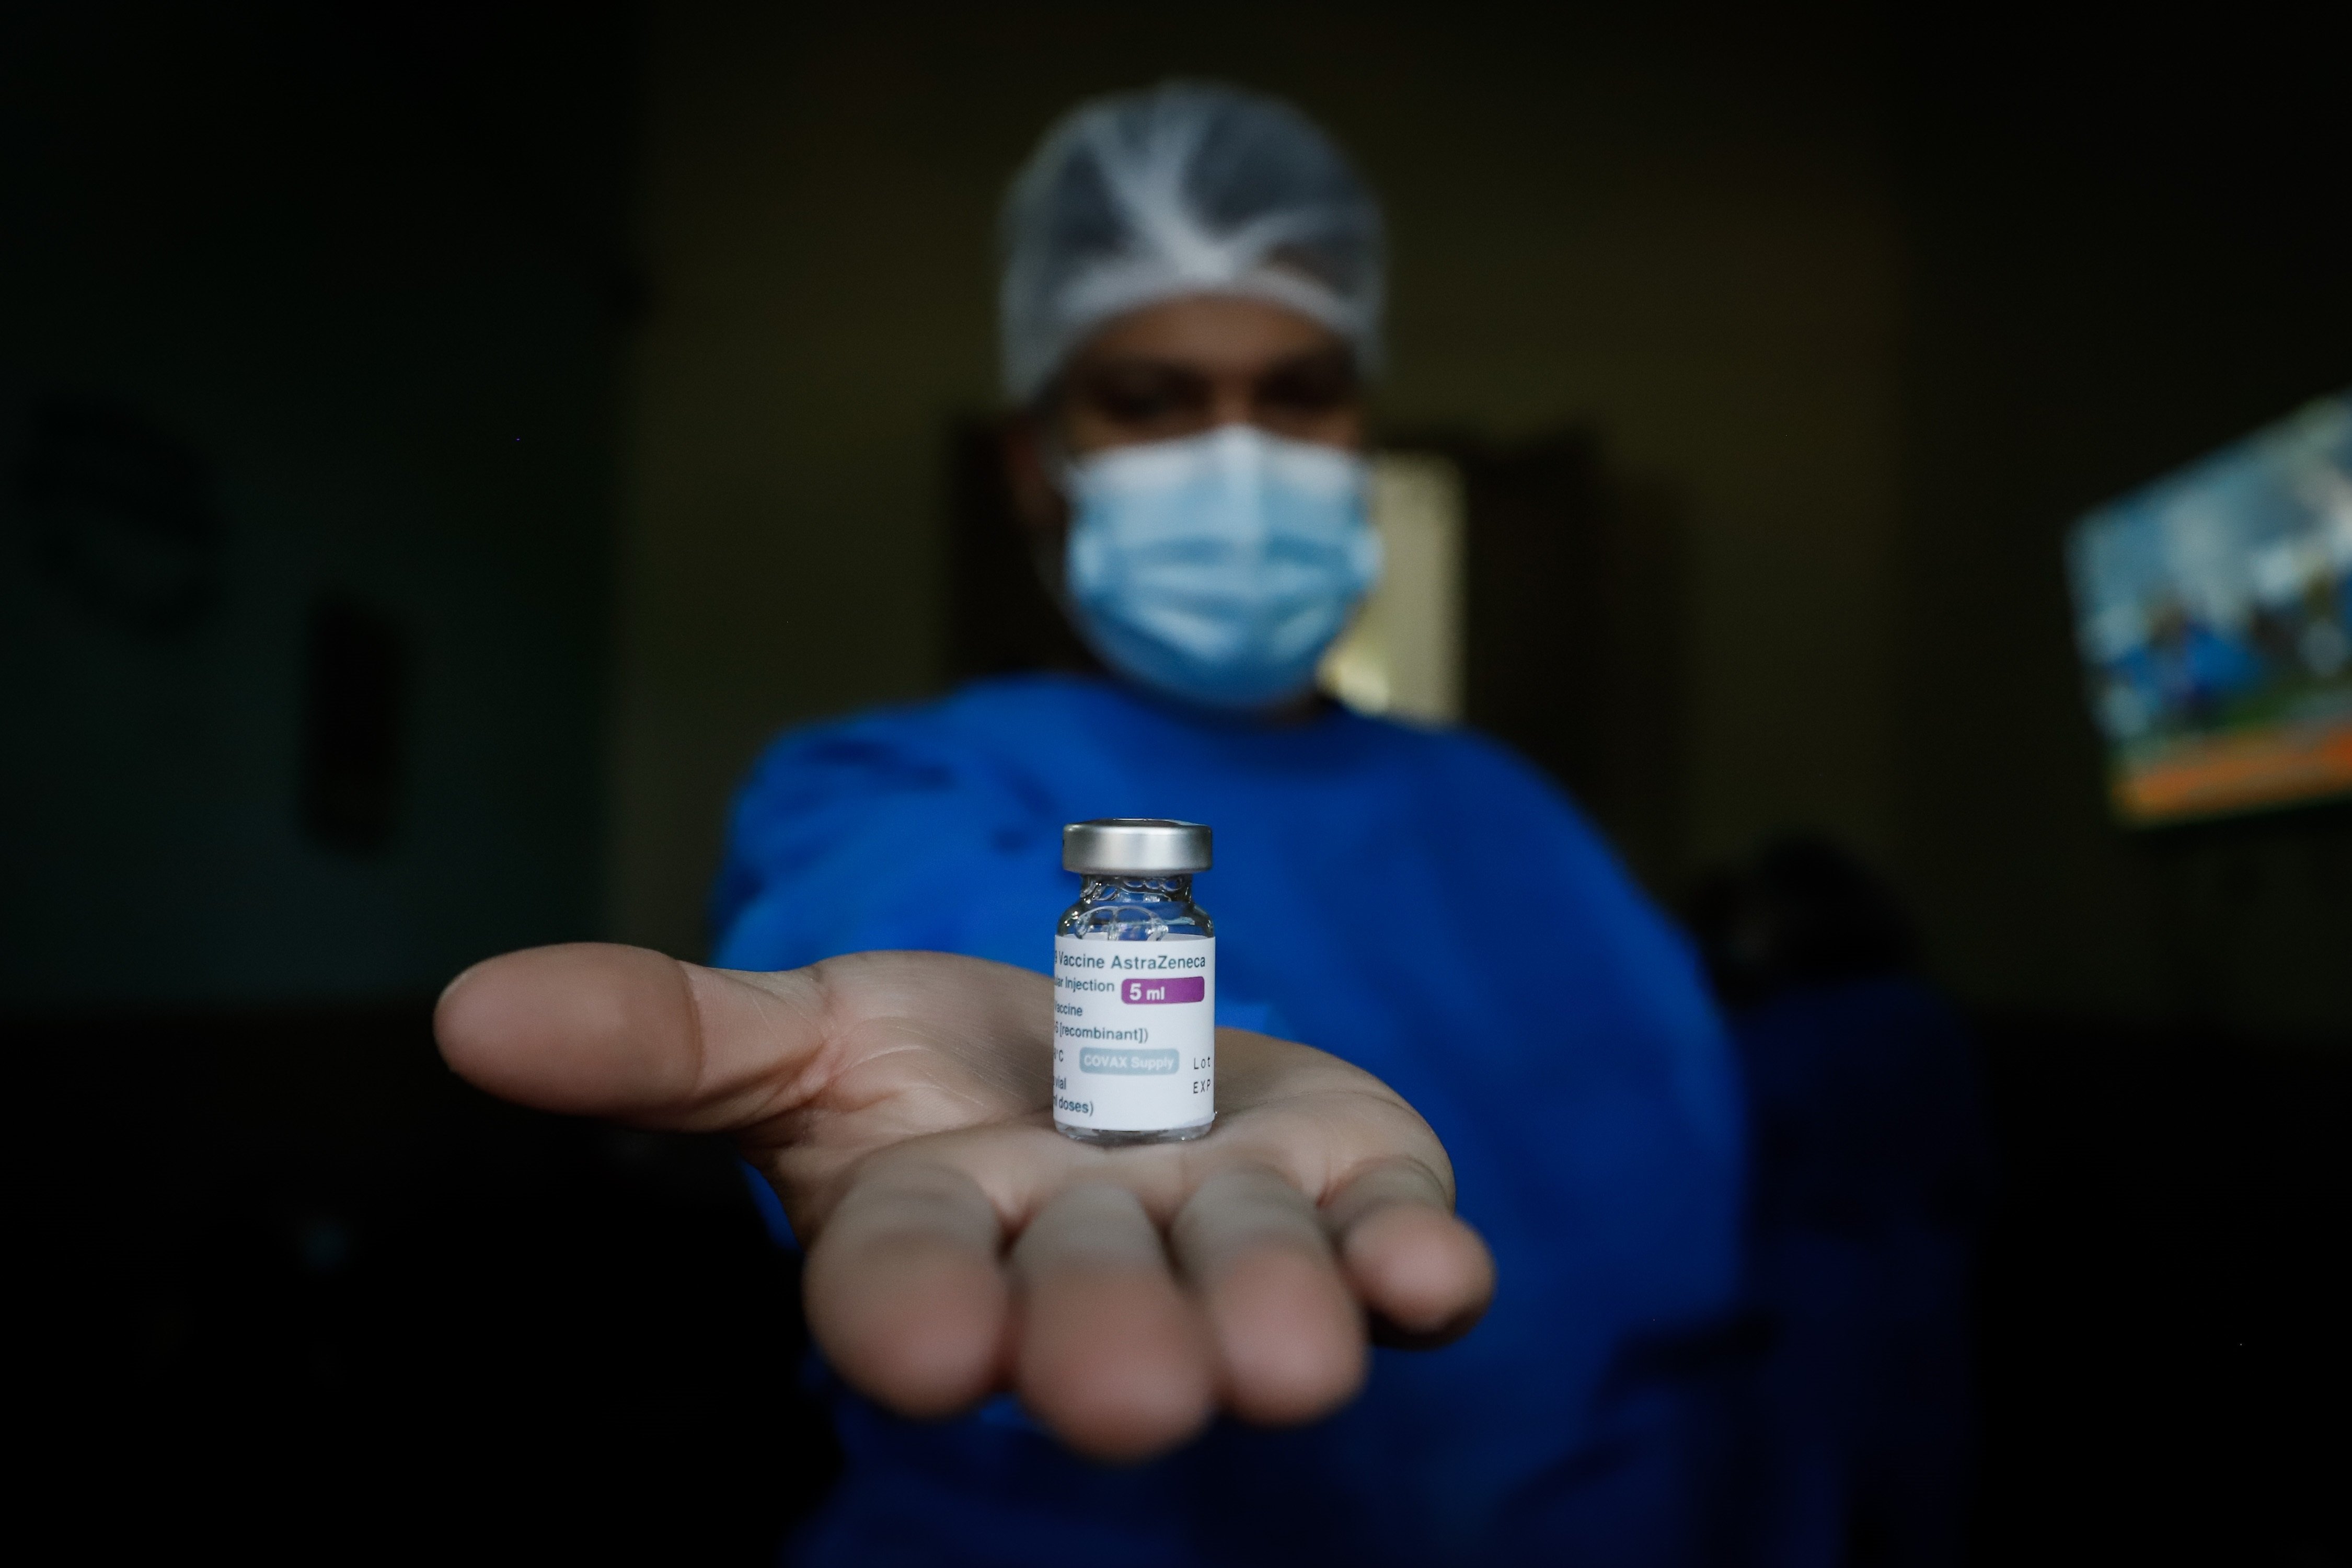 Muere un militar a los 35 años, días después de recibir la vacuna AstraZeneca